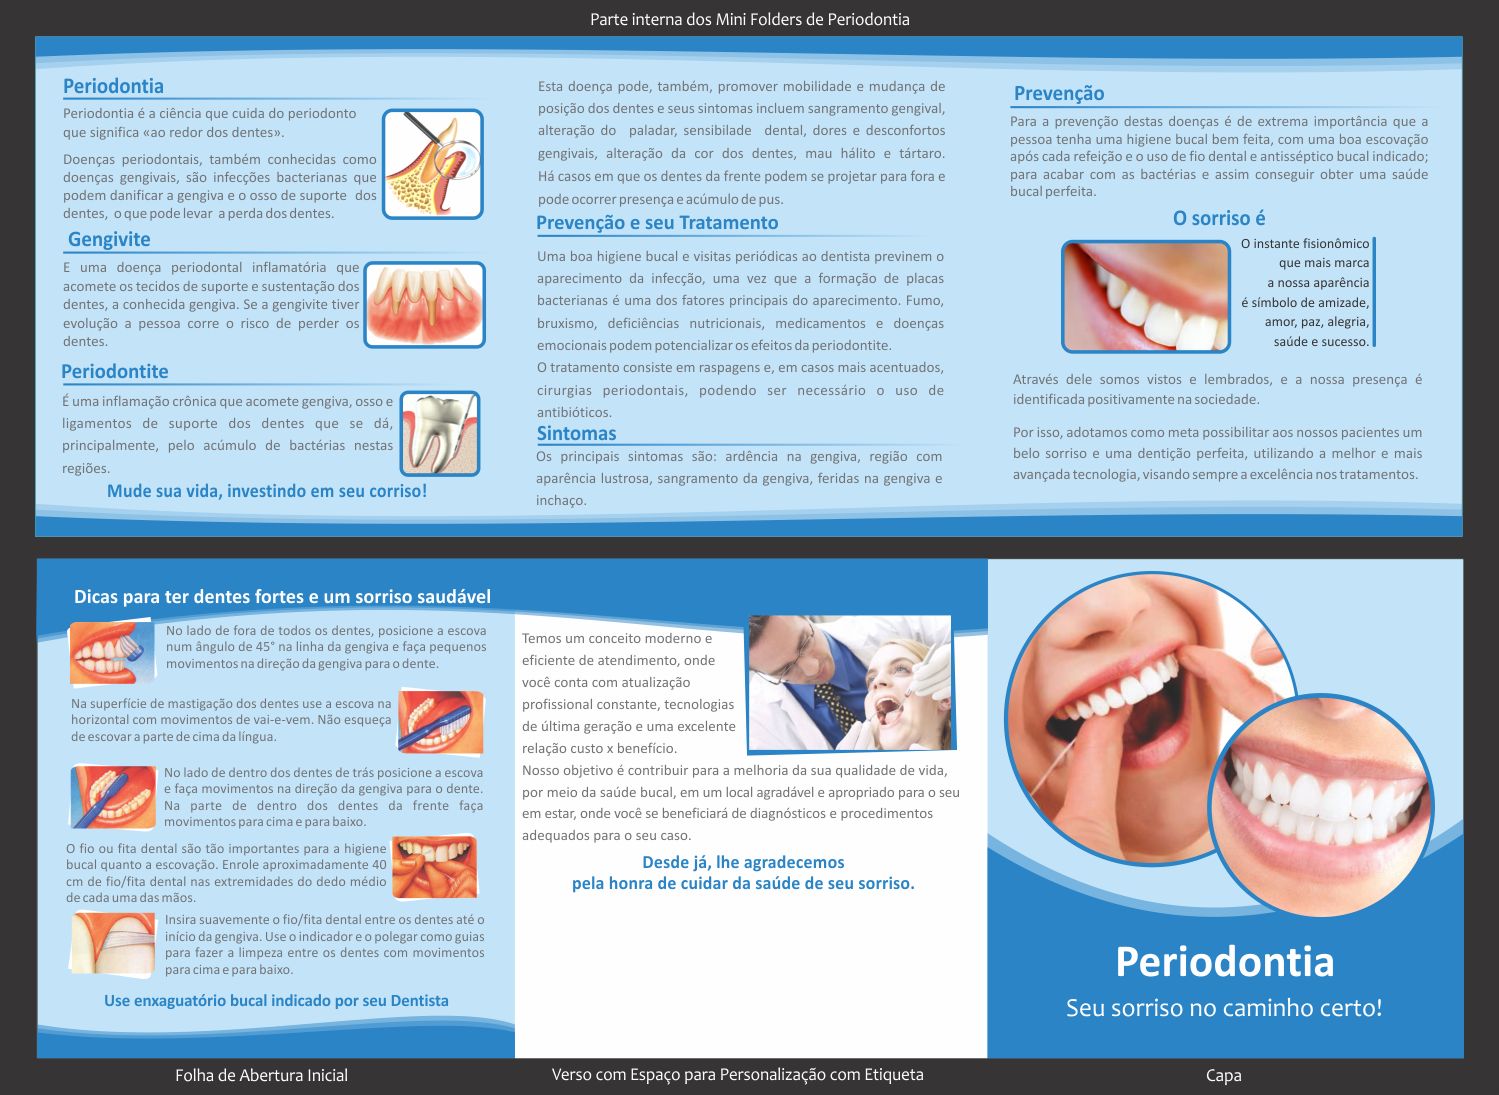 Art y Odonto Mini Folders de Odontologia Implantes Ortodontia Estética